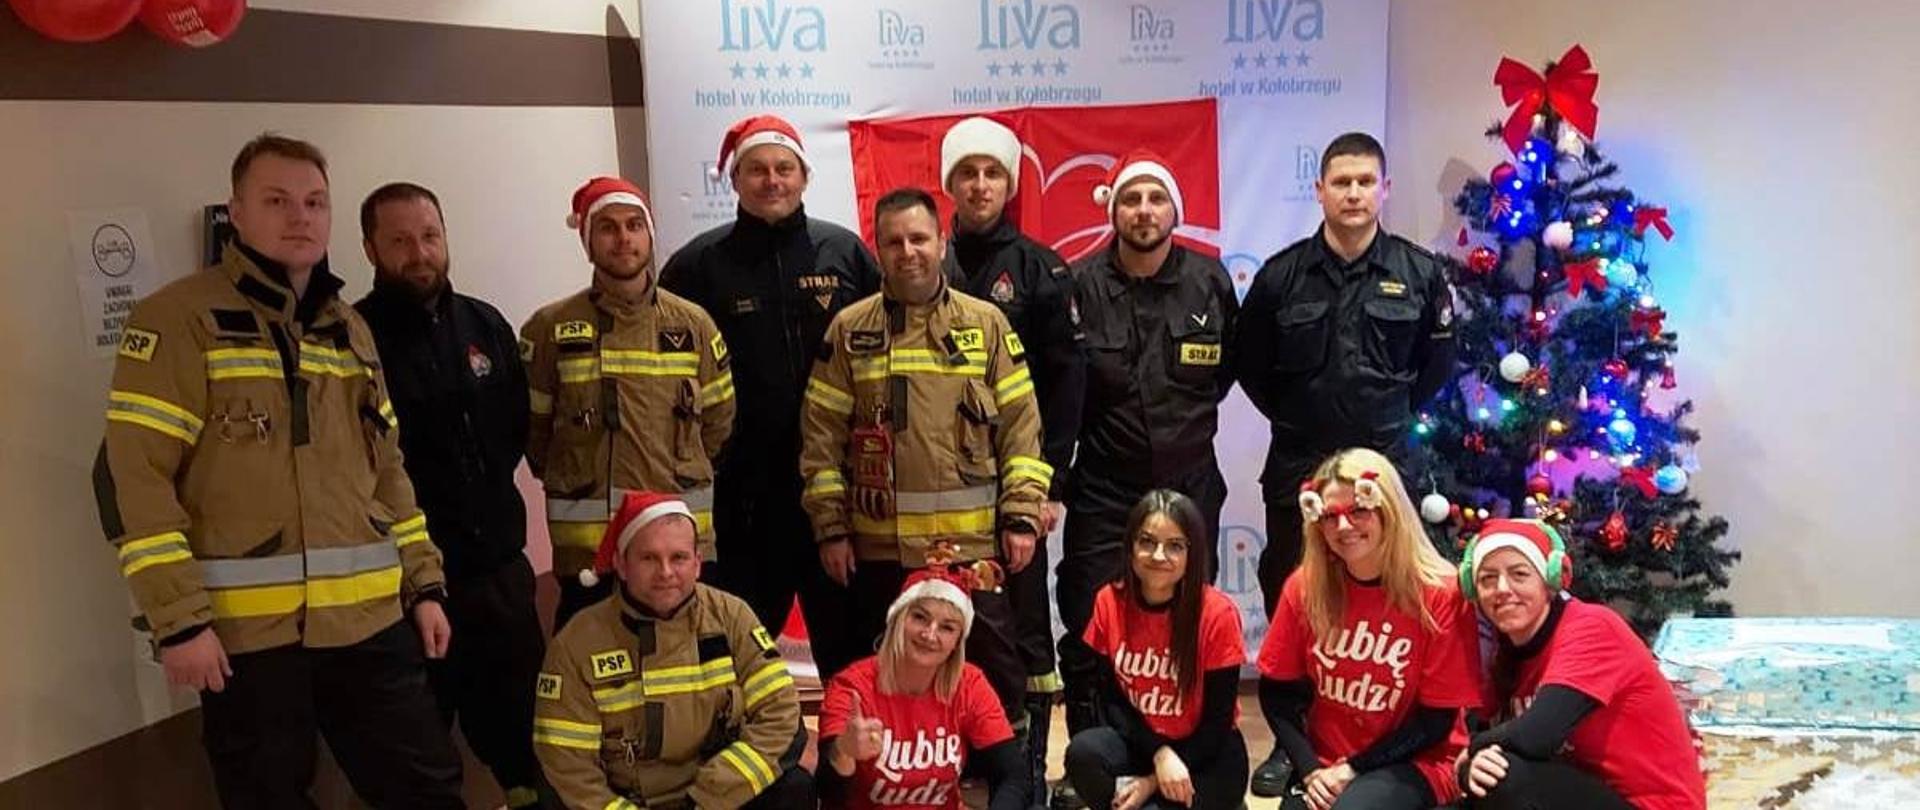 Strażacy i wolontariusze ubrani w czerwone stroje i czapki na tle baneru z logo "Szlachetnej Paczki". Za ich plecami choinka świąteczna. Obok przygotowane paczki.